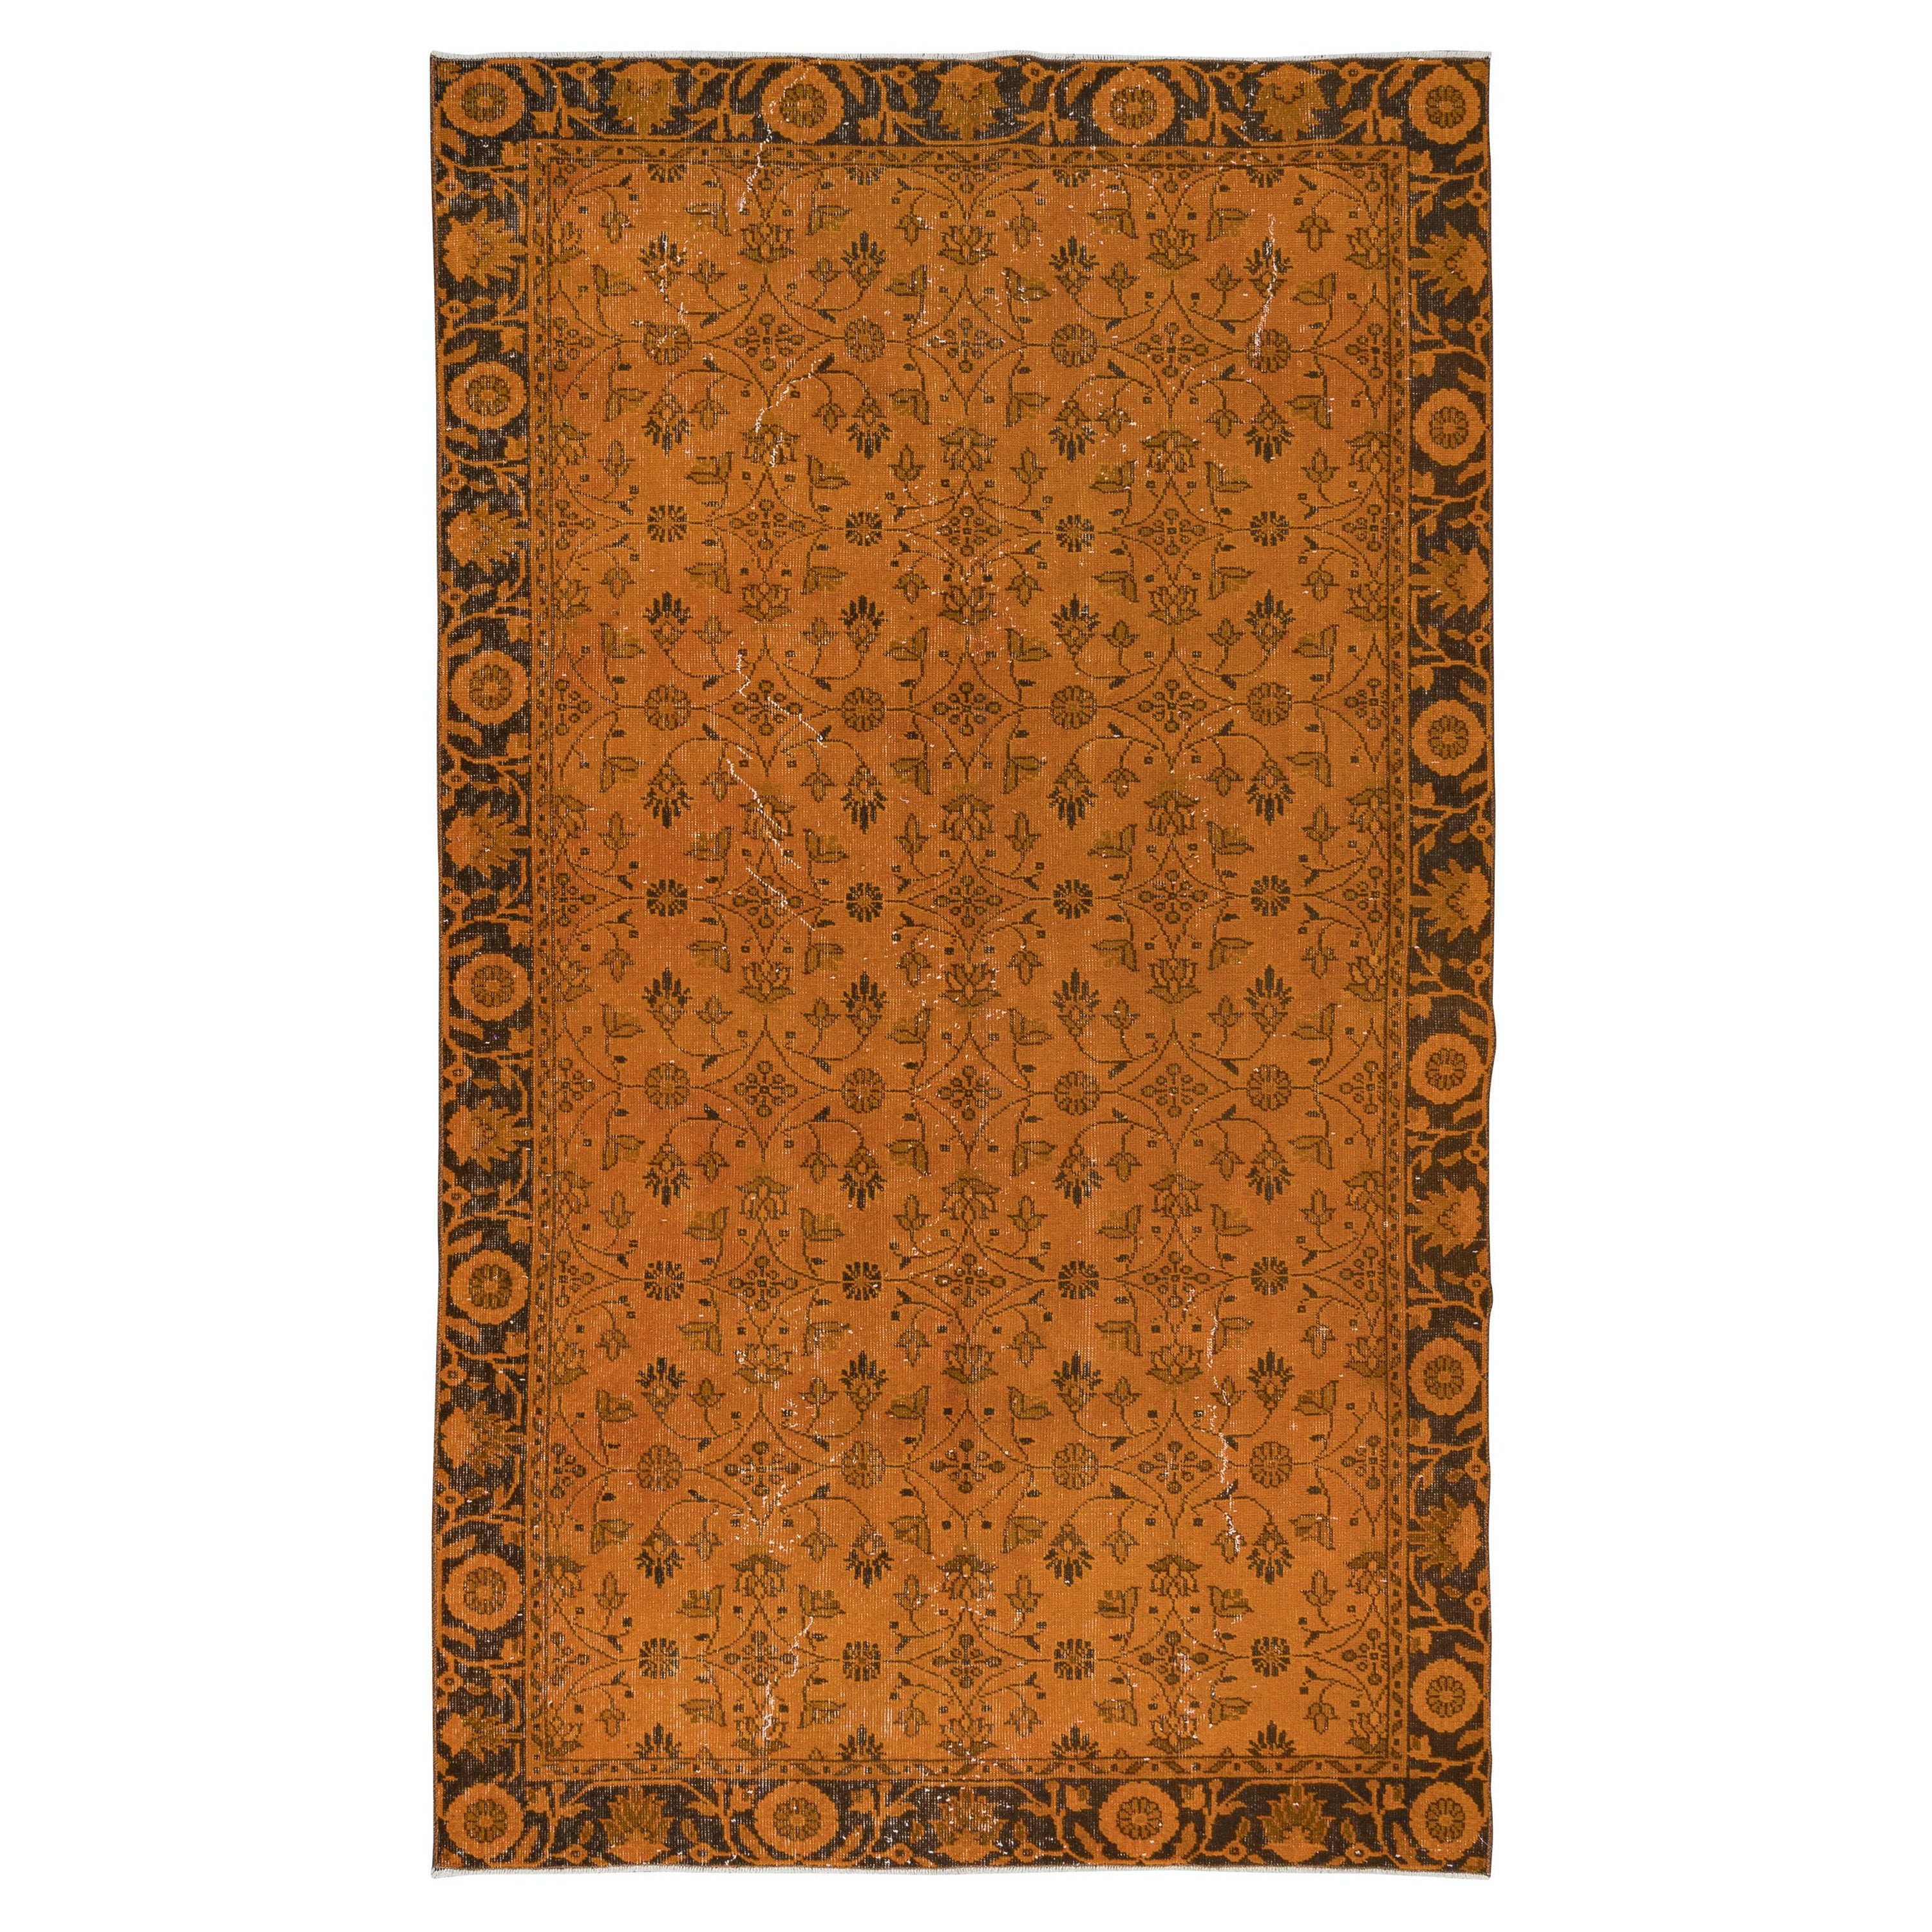 5.6x9,3 Ft Orange Handgefertigter türkischer Teppich mit botanischem All-Over-Design